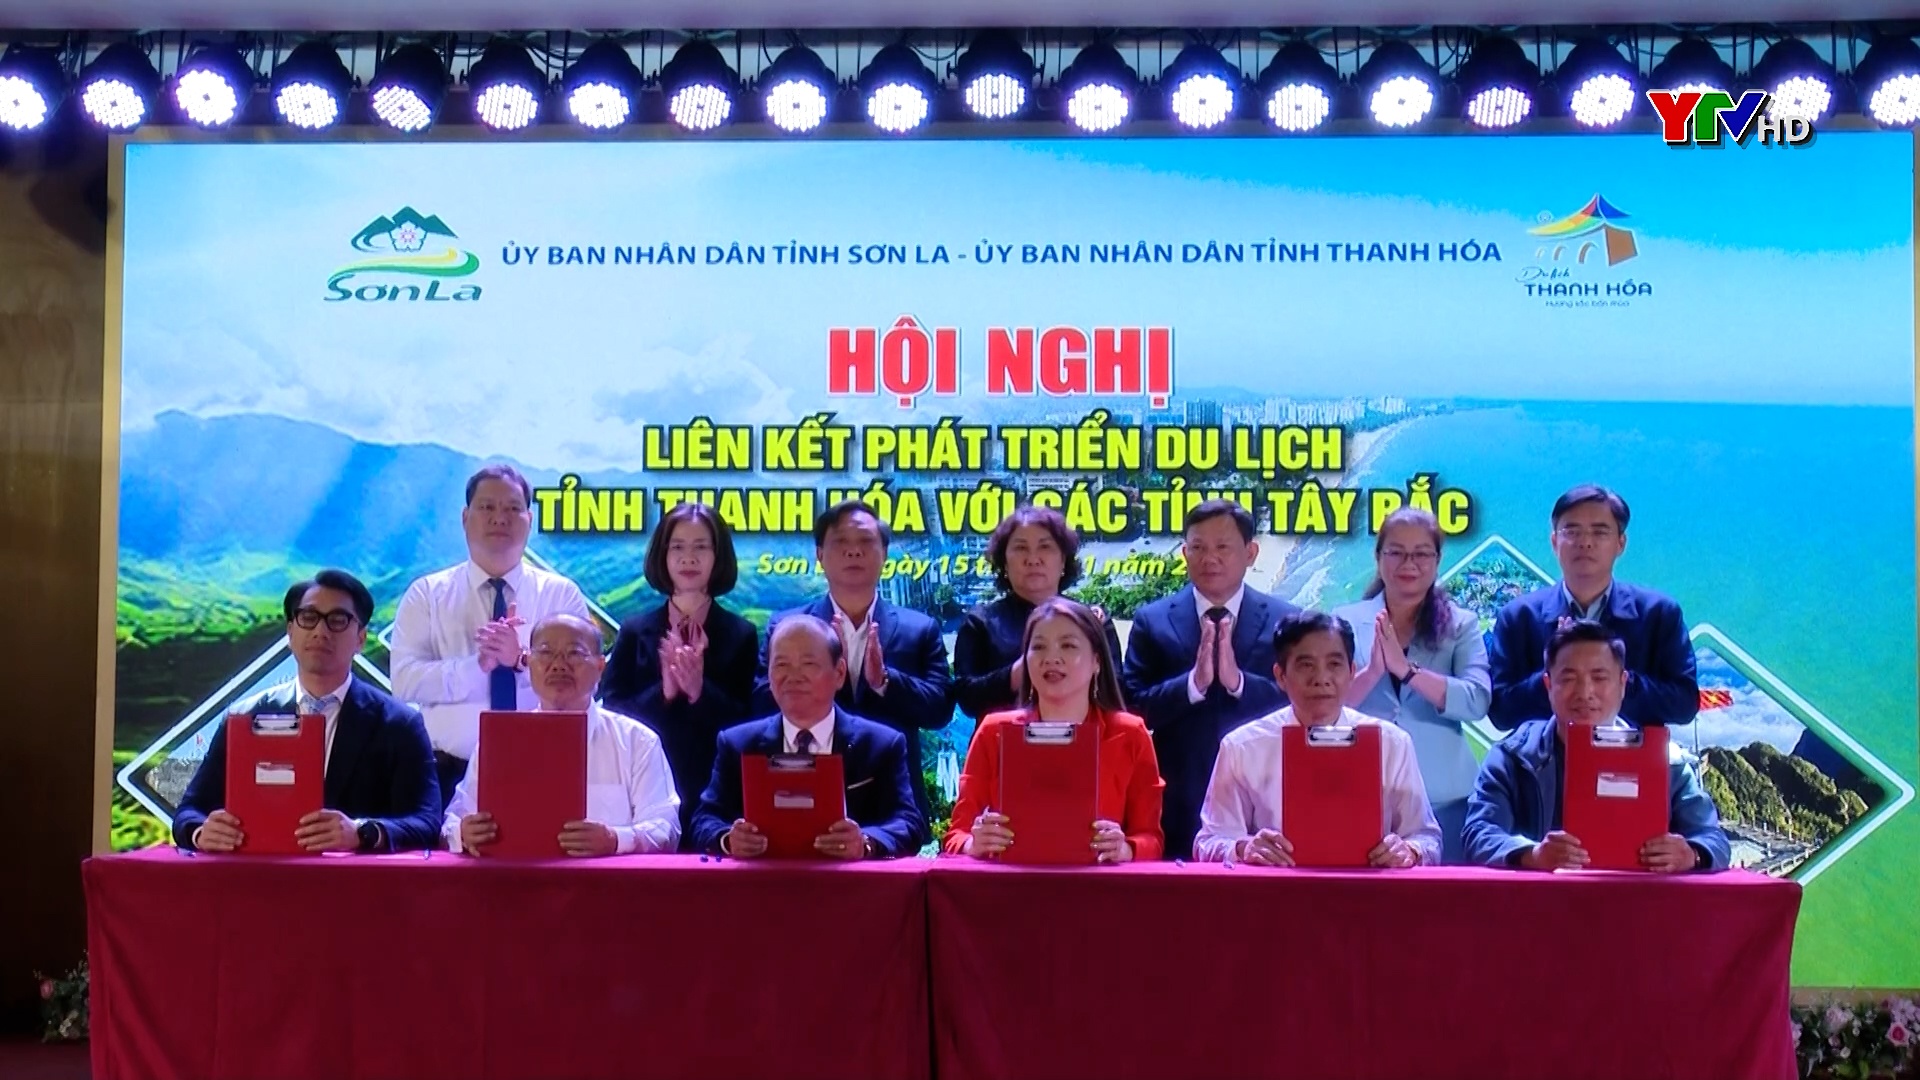 Hội nghị liên kết phát triển du lịch tỉnh Thanh Hoá với các tỉnh Tây Bắc